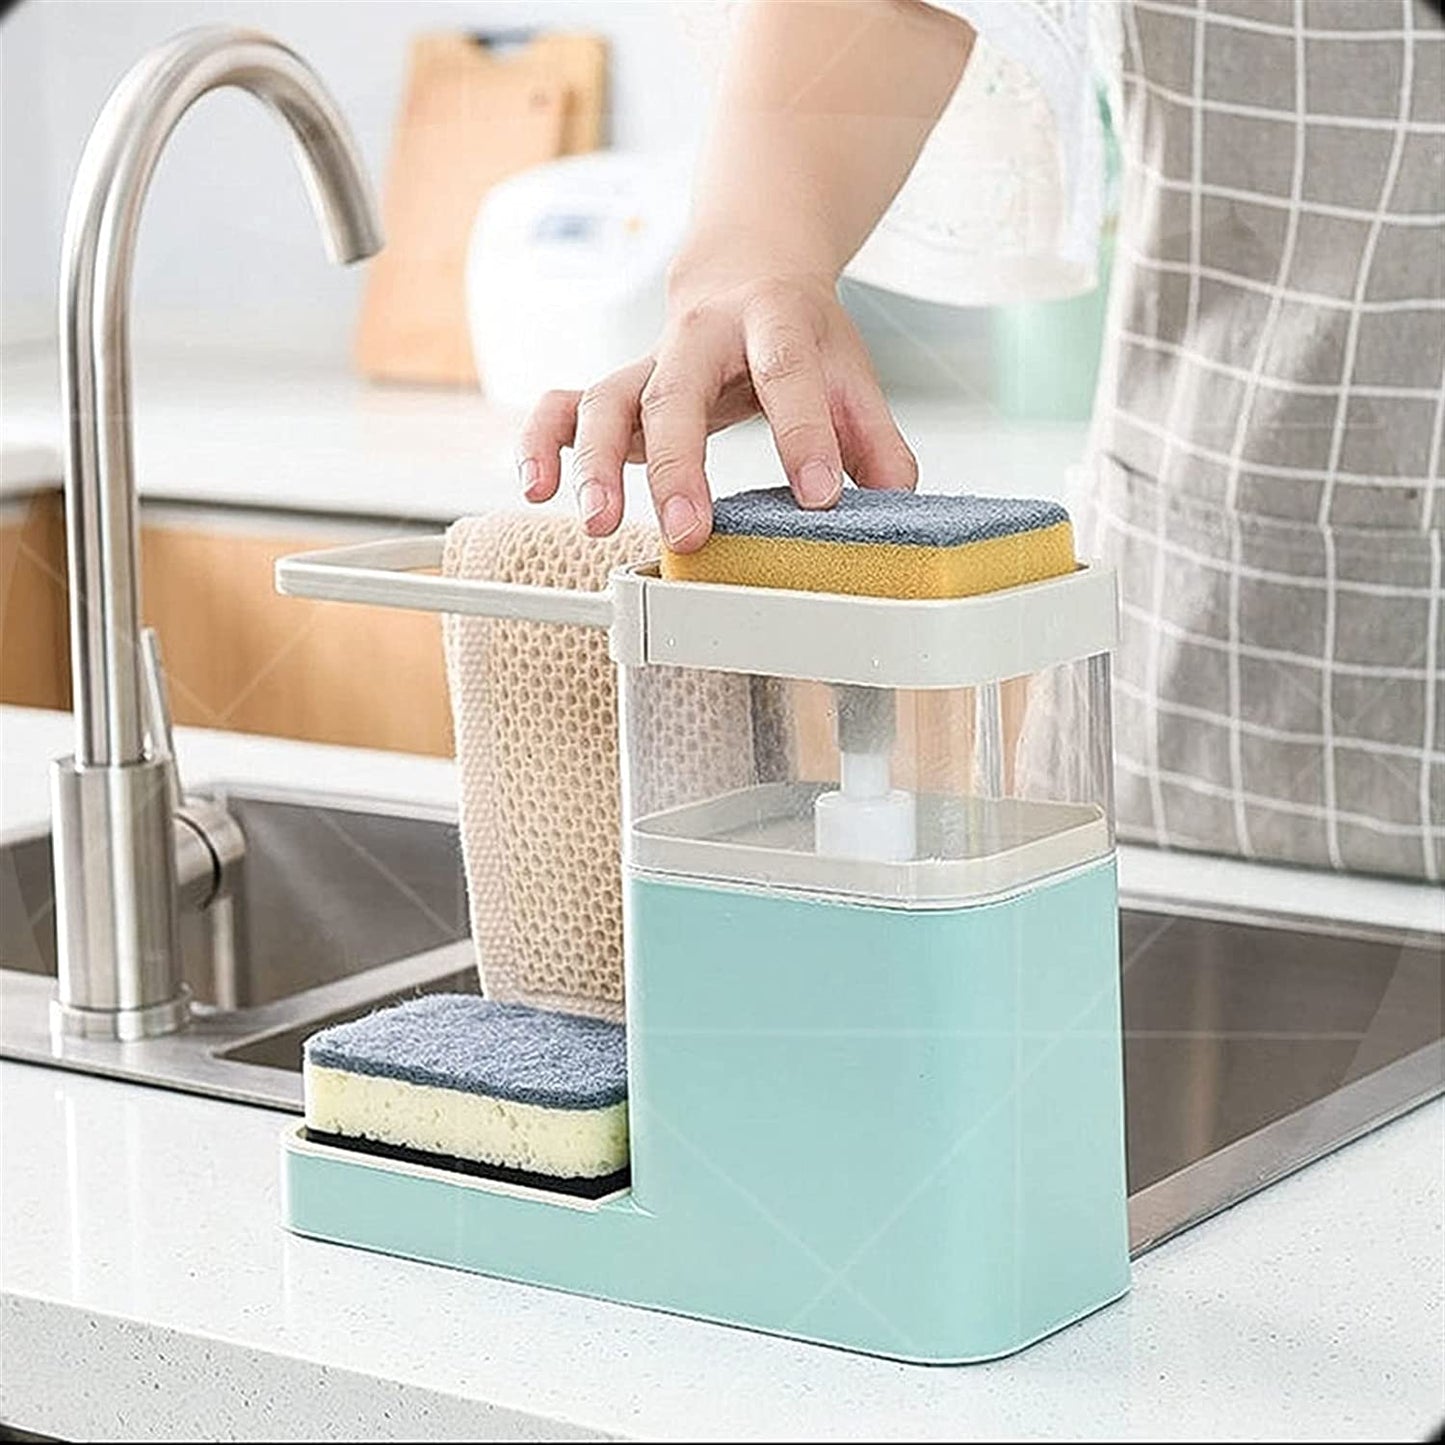 Distributeur de savon 2 en 1 avec vaisselle et porte-serviettes - X10 Maroc - Livraison gratuite - Bleu clair